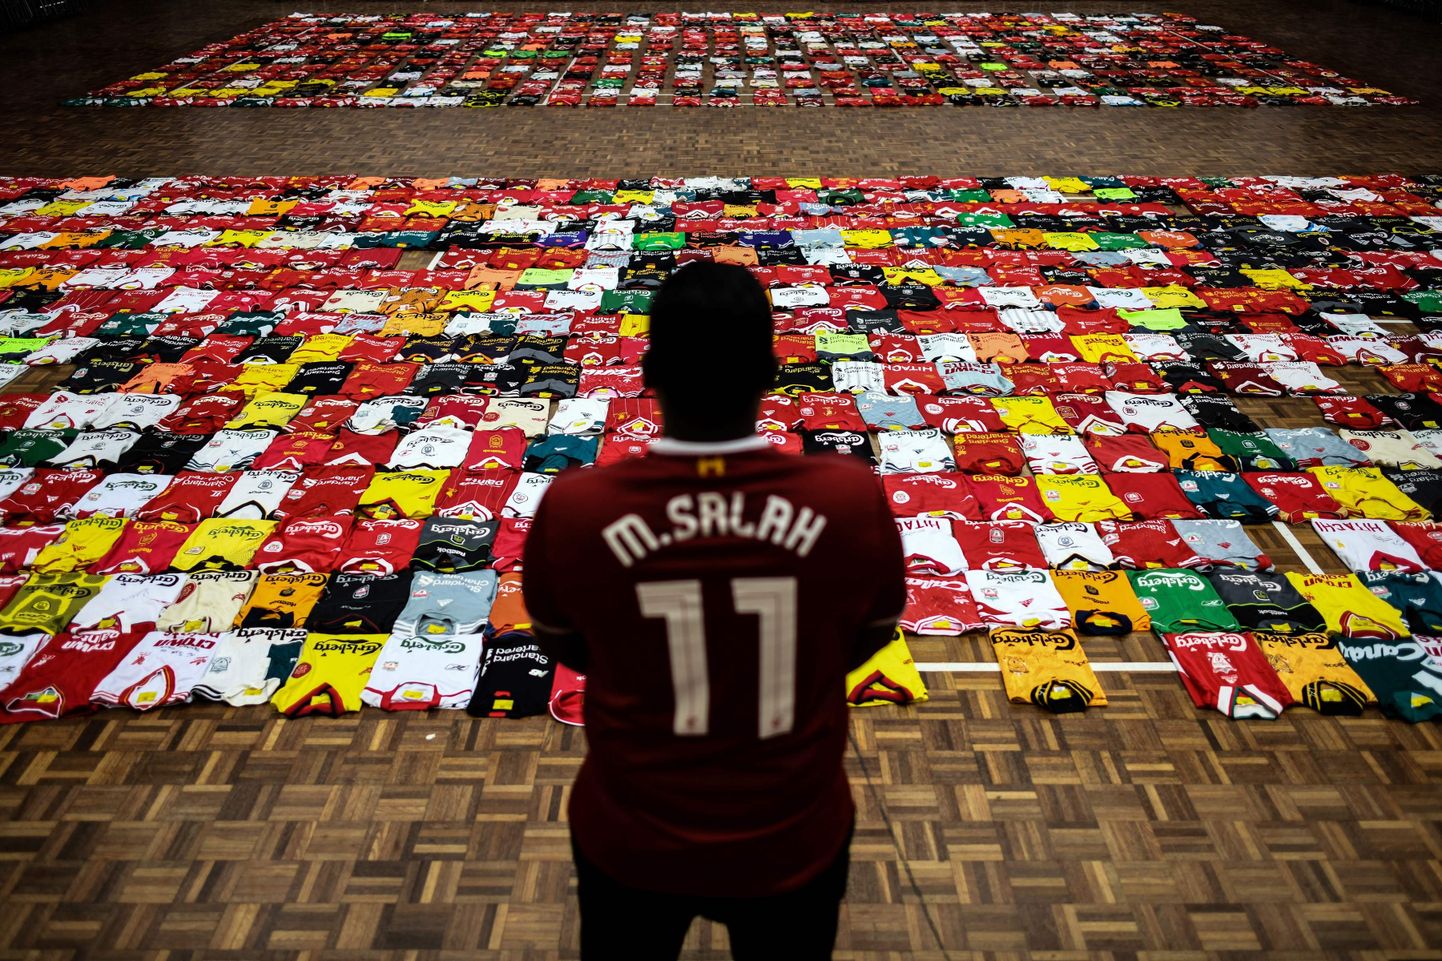 Liverpool on globaalse haardega jalgpalliklubi, kelle matše Meistrite liiga poolfinaalis jälgitakse igas maailma otsas. Fotol silmitseb Mohamed Salahi särki kandev Liverpooli fänn Malaisias välja pandud näitust erinevatest Liverpooli mänguvormidest.